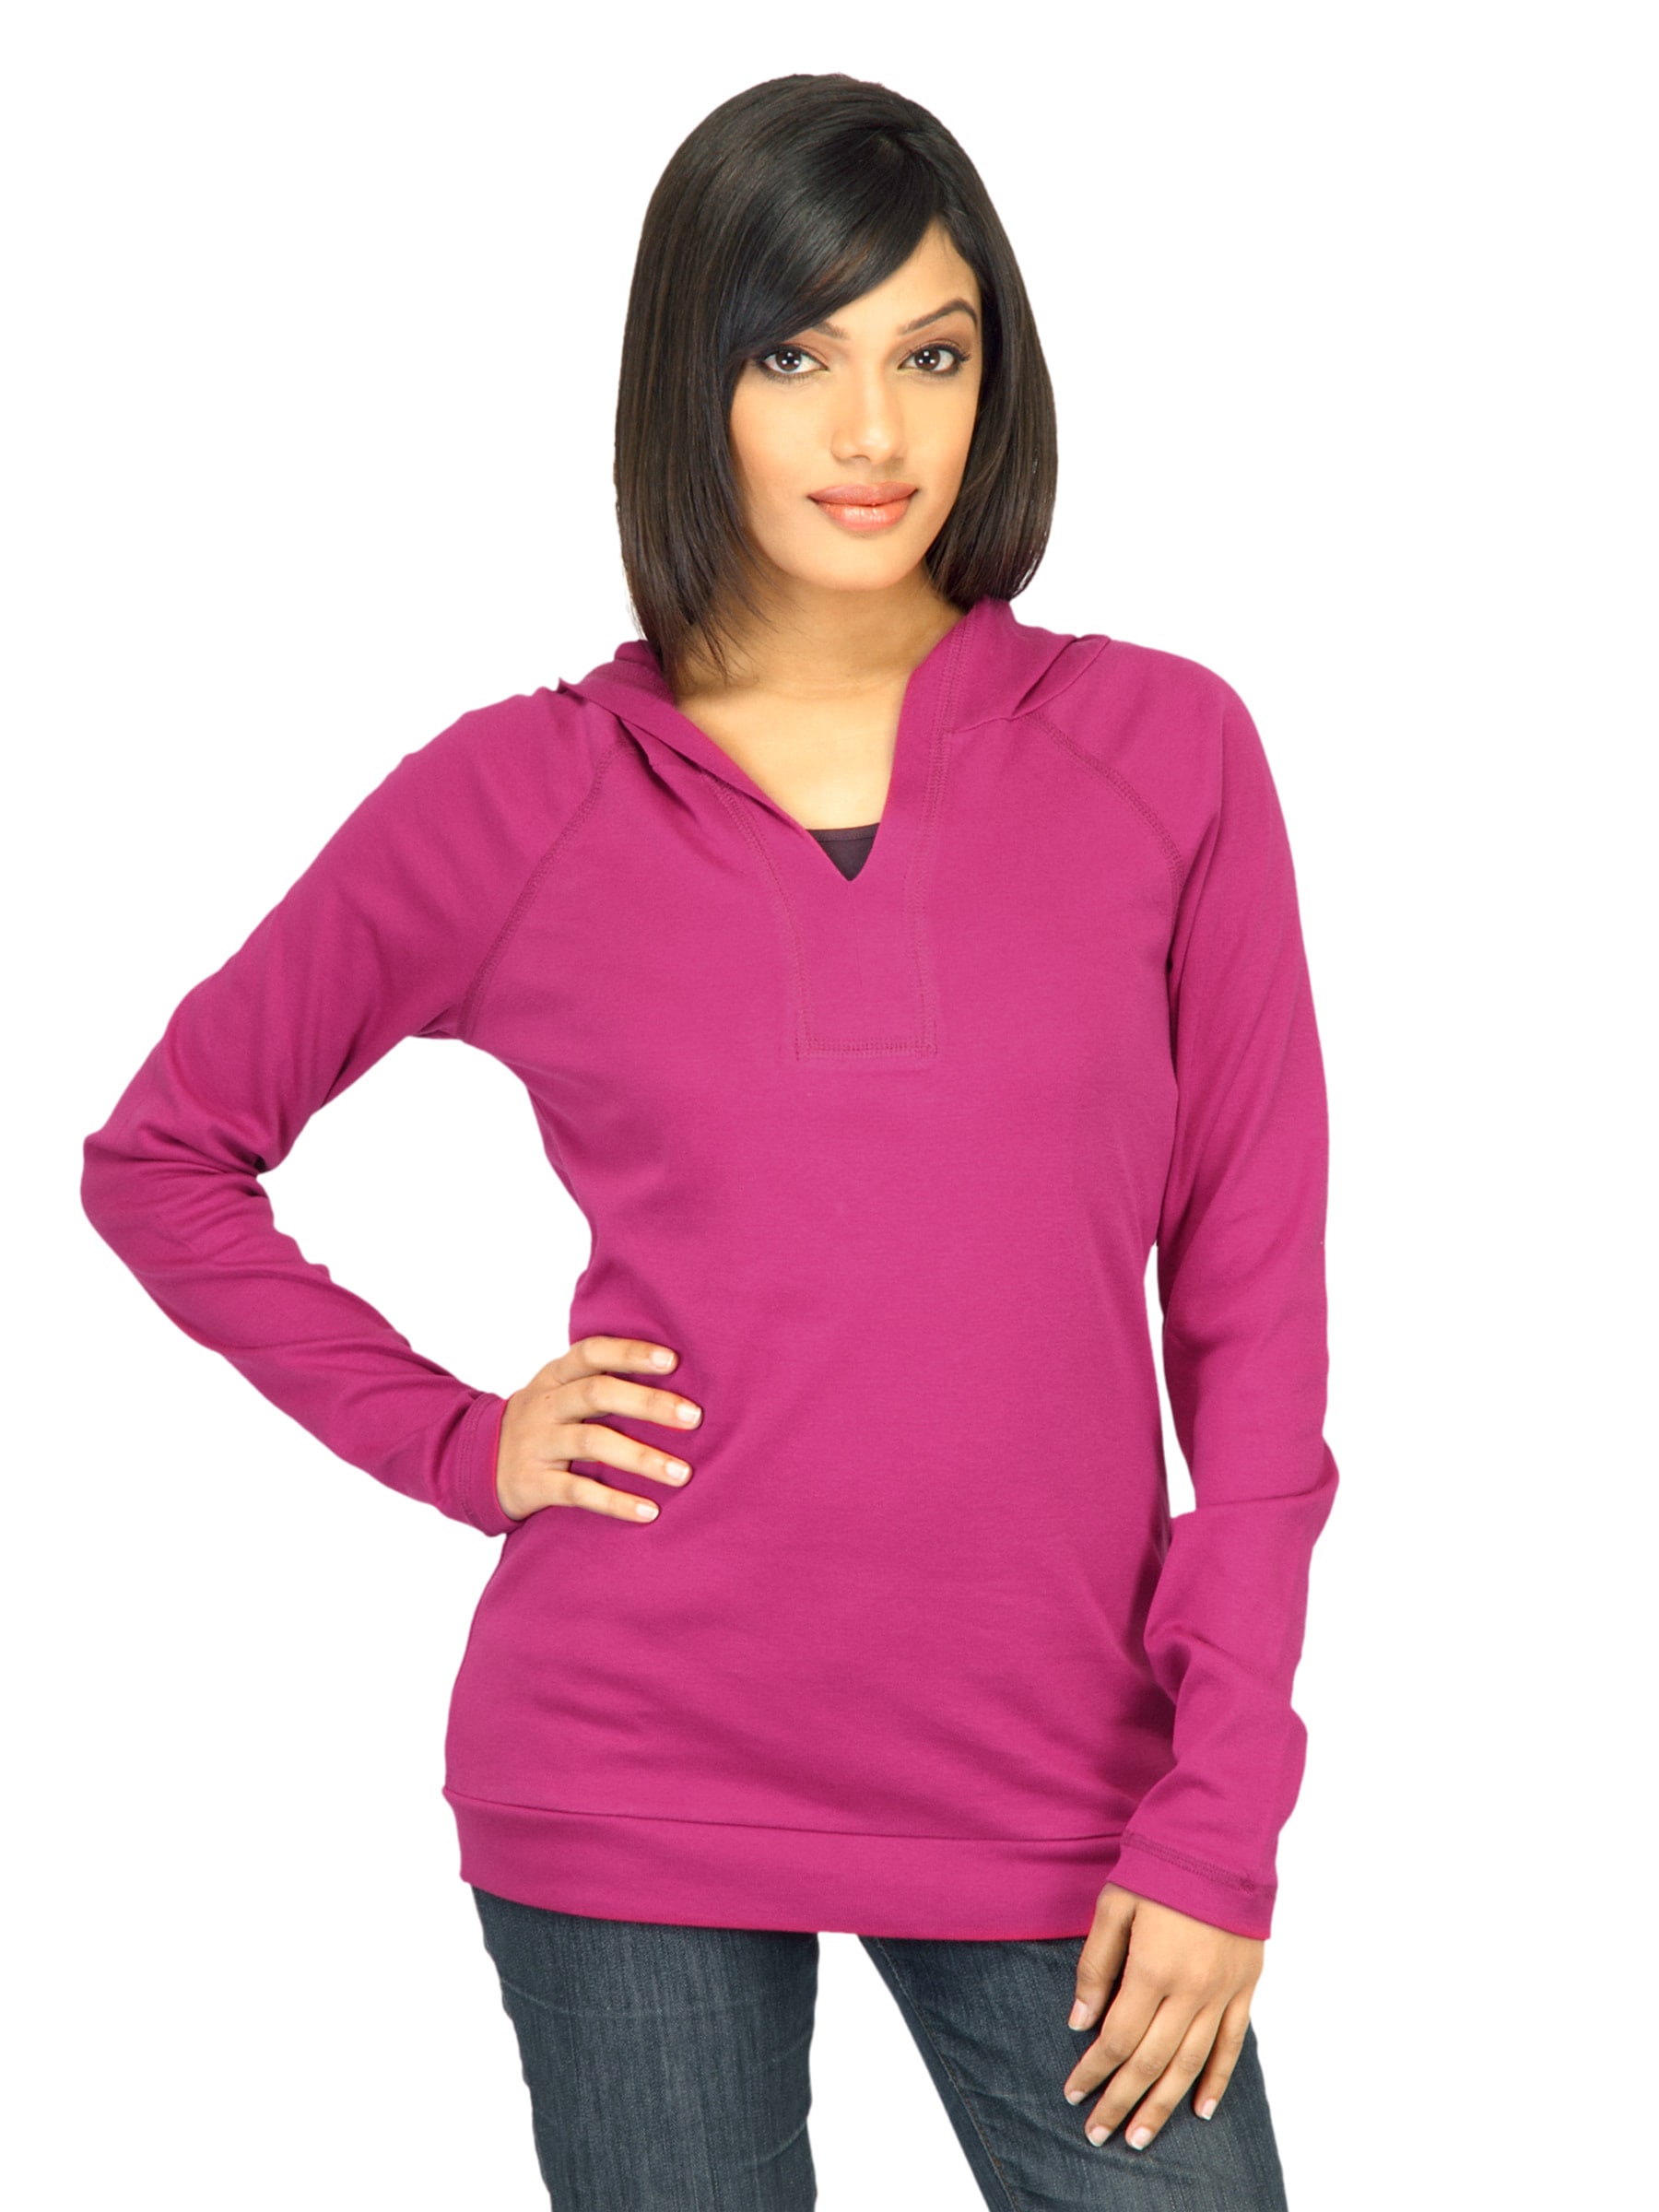 United Colors of Benetton Women Solid Magenta Sweatshirt